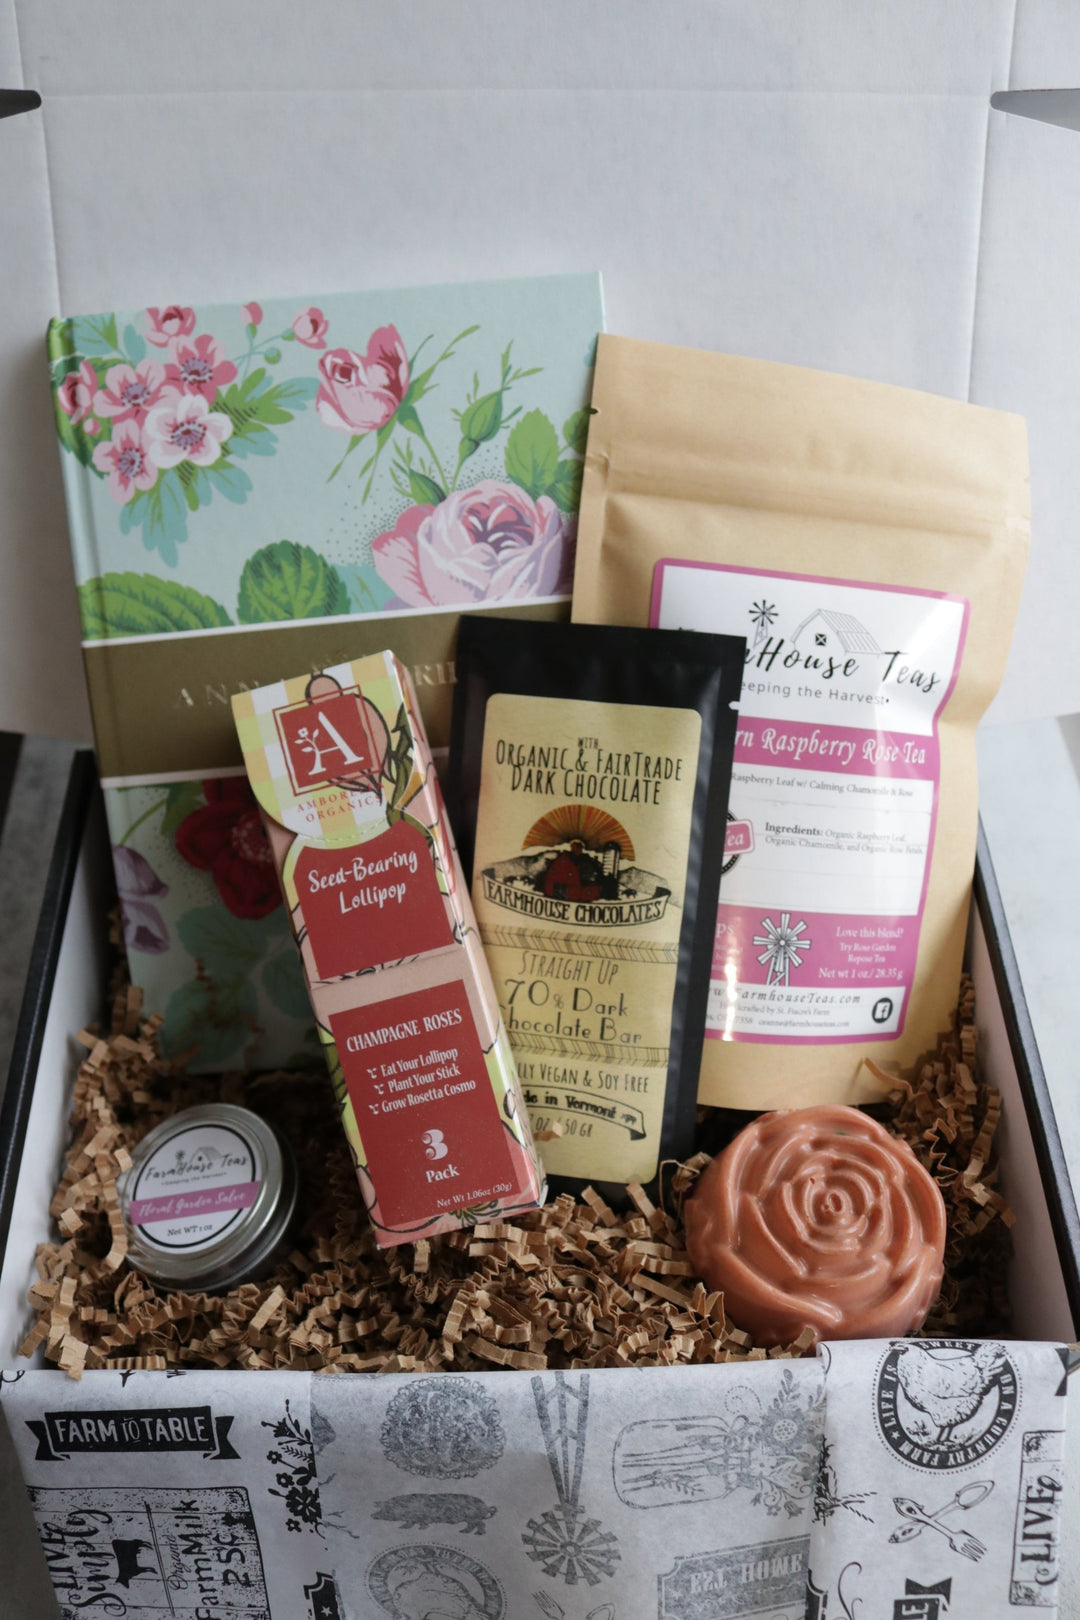 Smell the Roses Box - Farmhouse Teas